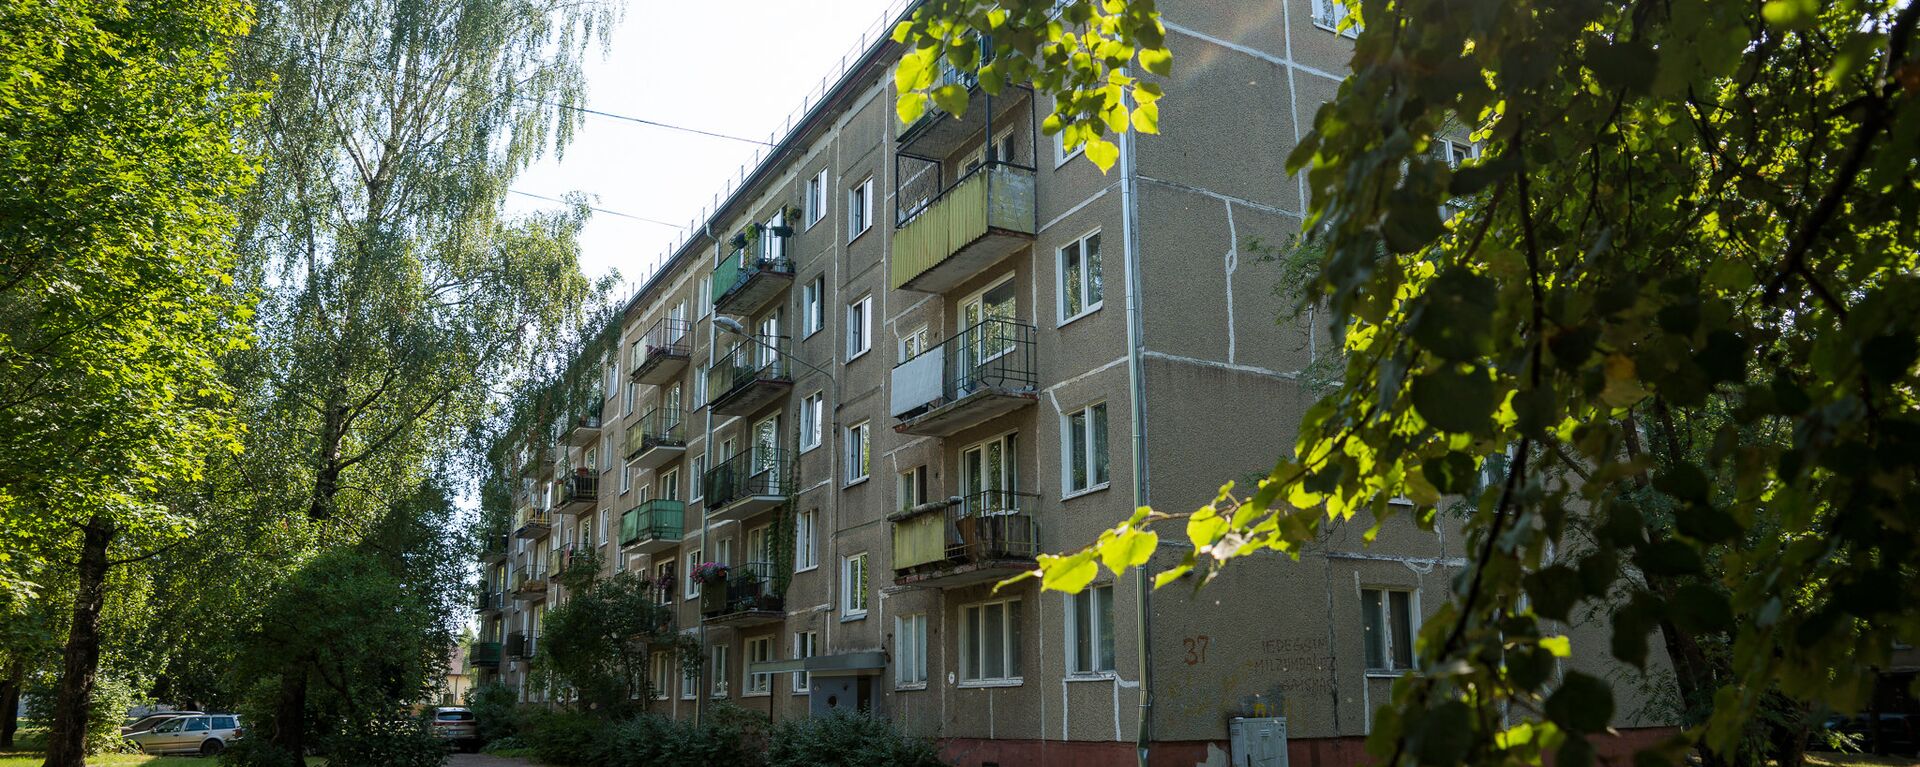 Многоквартирный дом по адресу ул. Юглас 37 - Sputnik Латвия, 1920, 04.05.2021